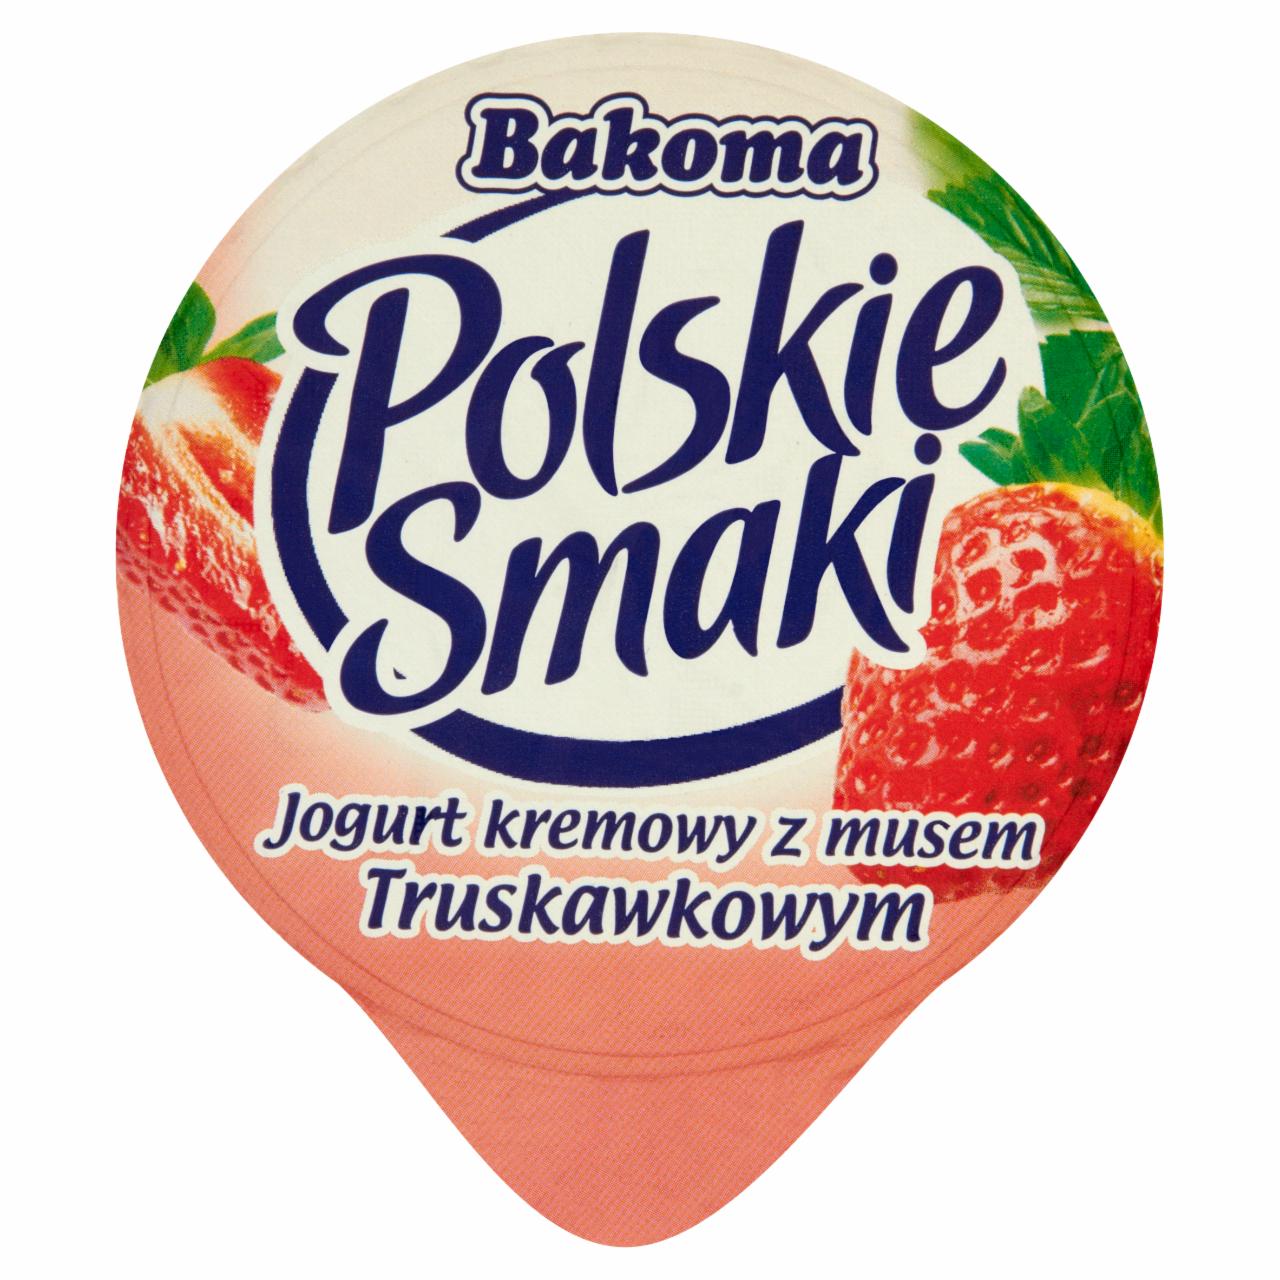 Zdjęcia - Polskie Smaki Jogurt kremowy z musem Truskawkowym Bakoma